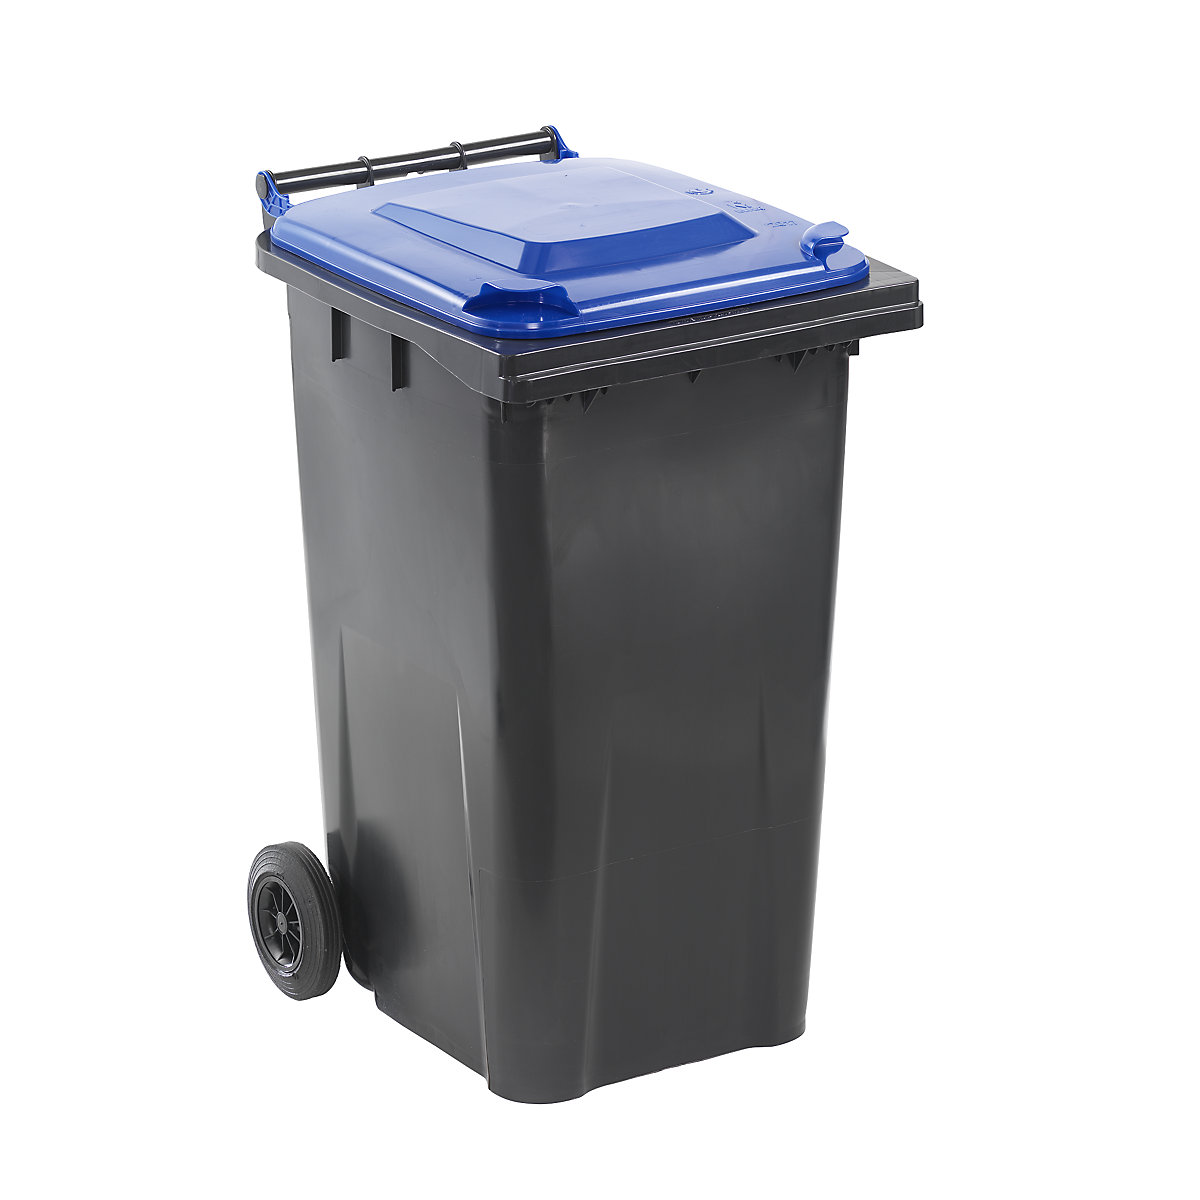 Mülltonne nach DIN EN 840, Volumen 240 l, BxHxT 580 x 1100 x 740 mm, anthrazit, Deckel blau